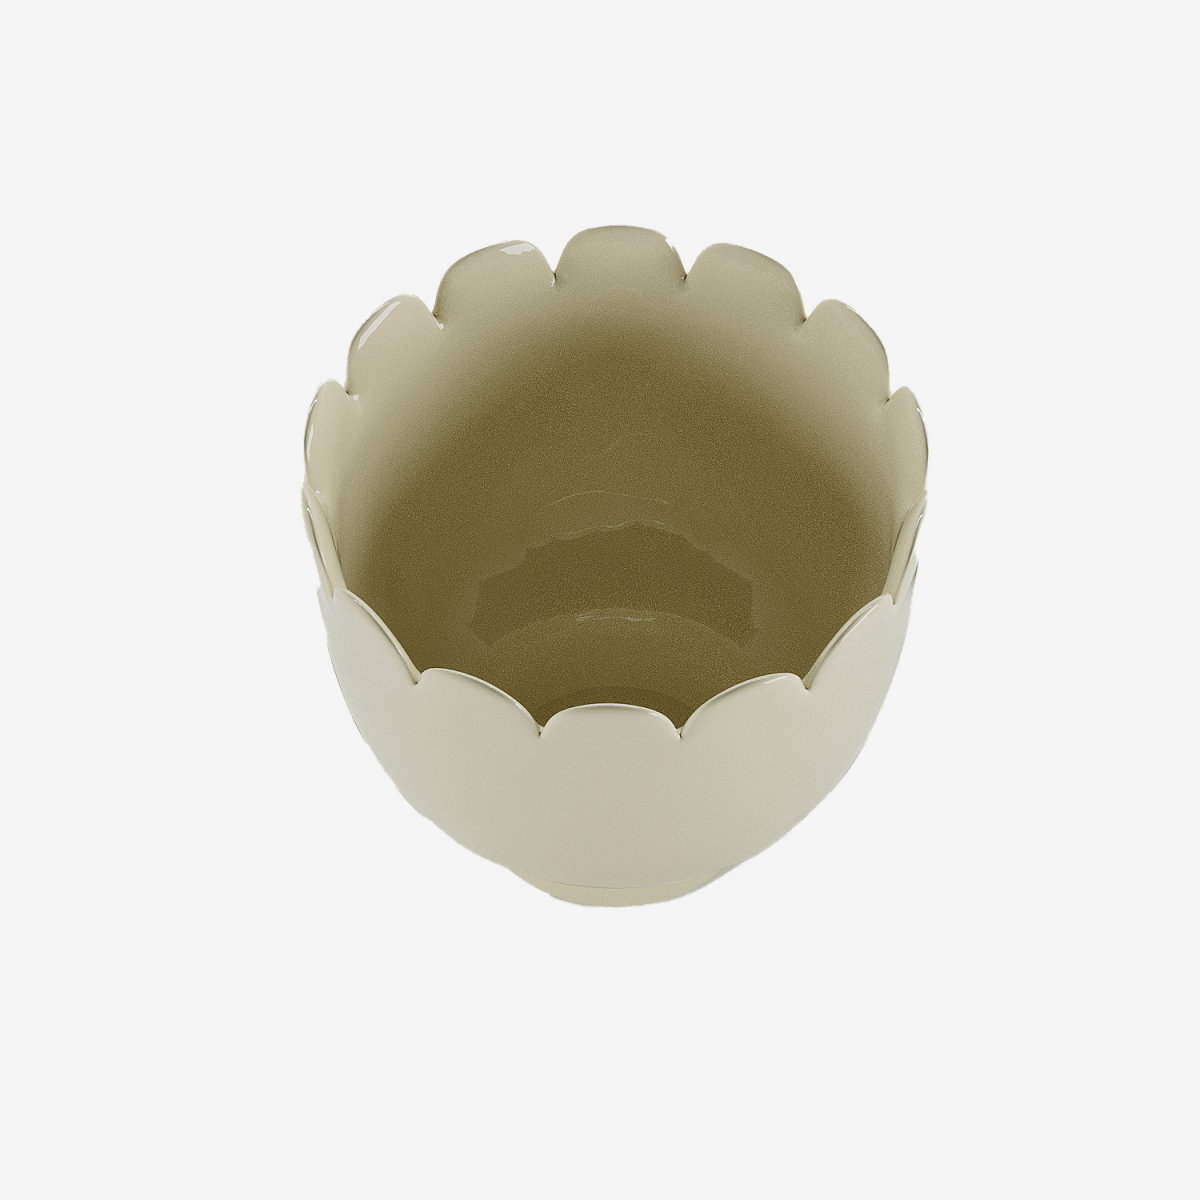  Potiron Paris, meubles déco design - Petit vase pot de fleur forme tulipe en céramique crème